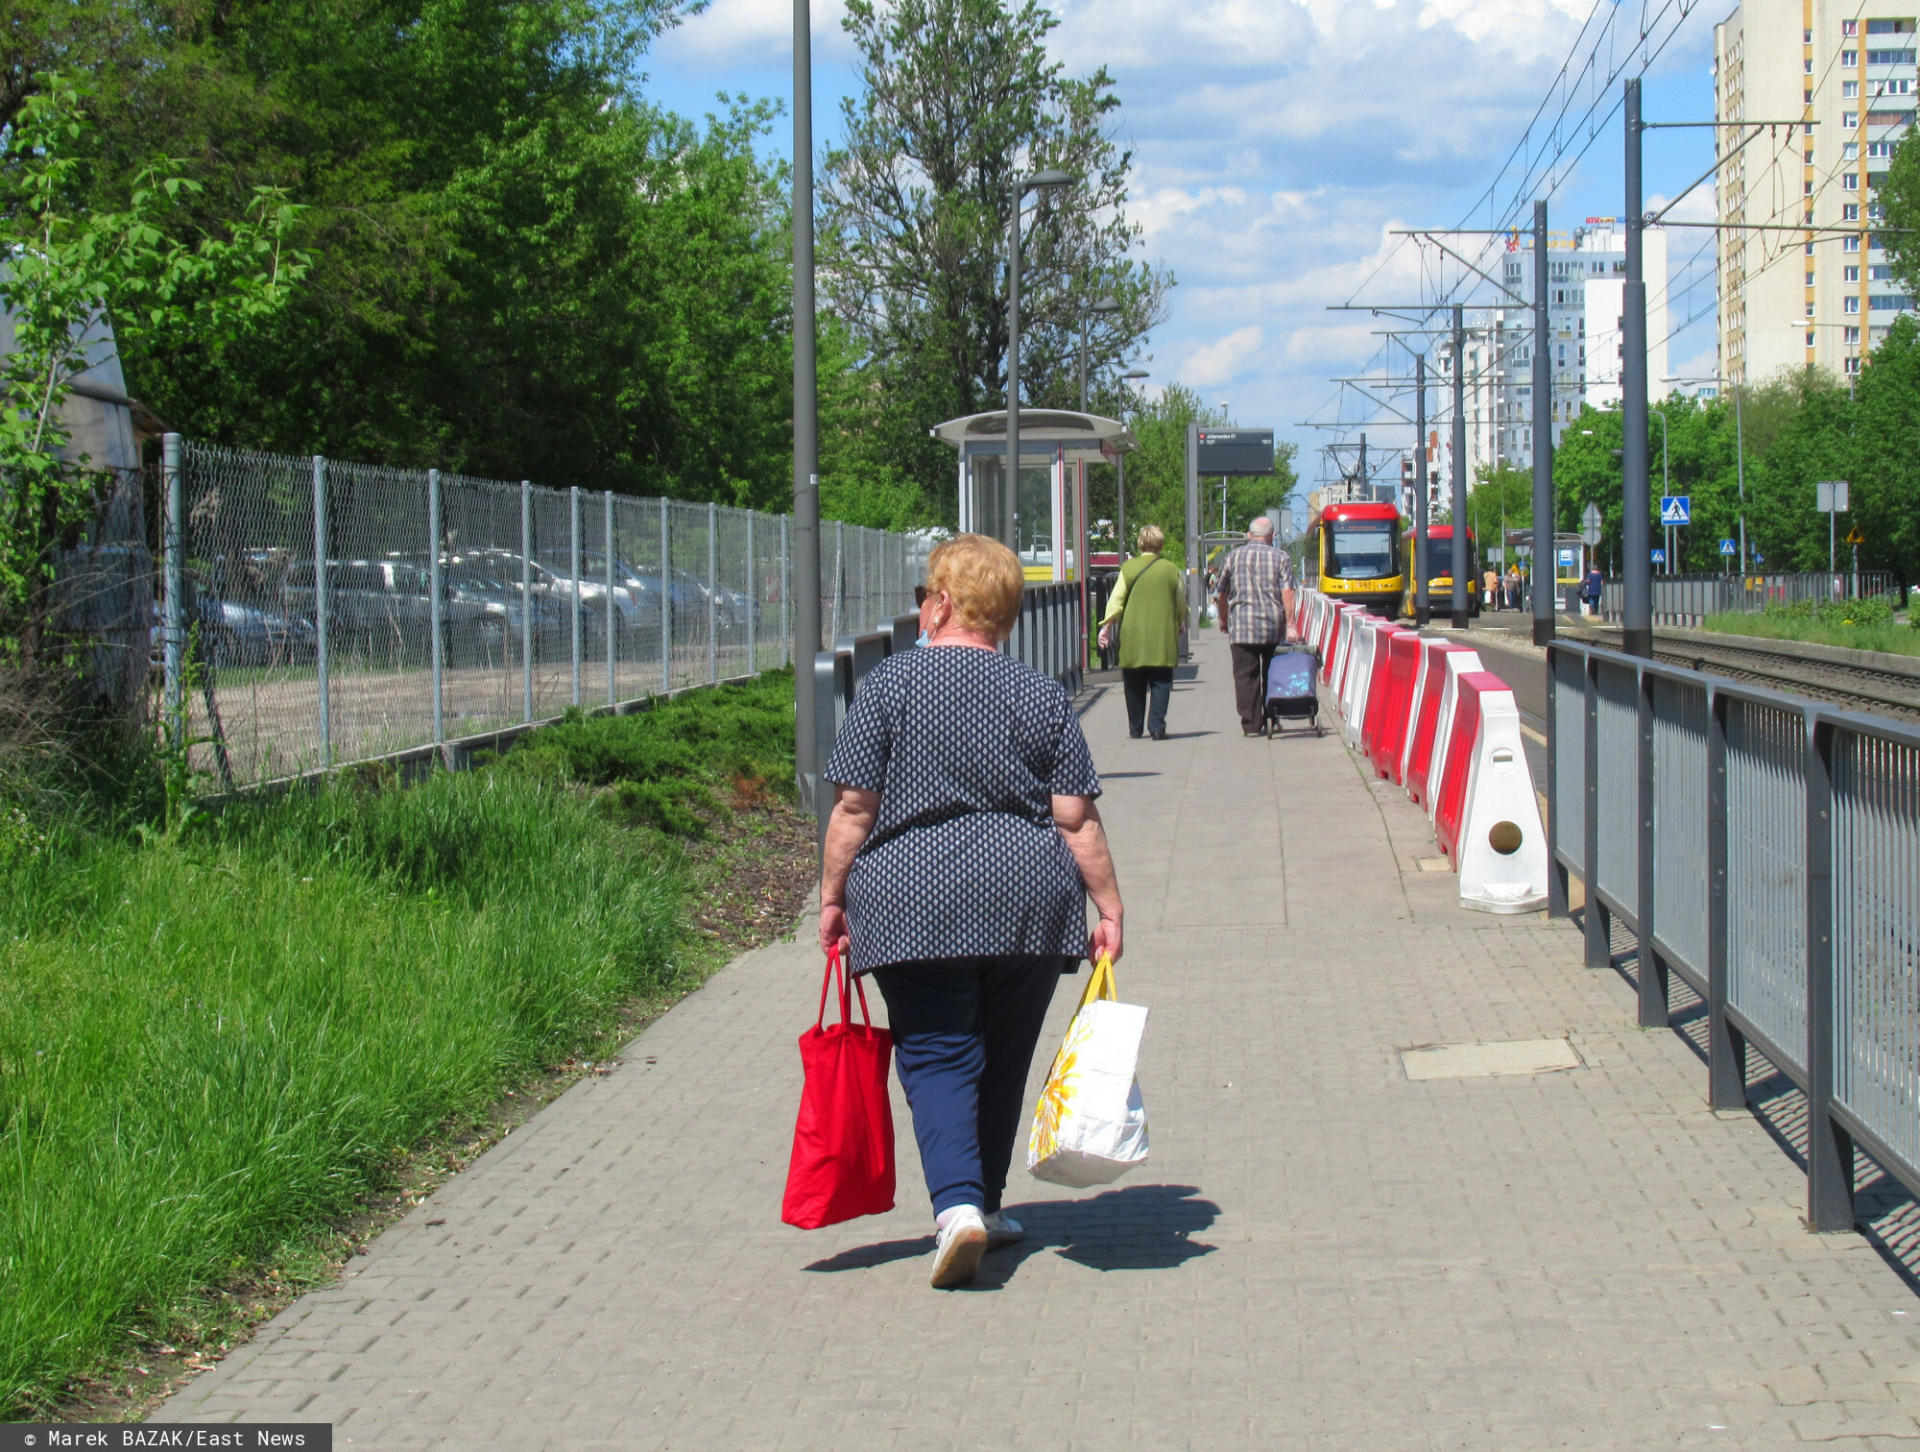 PHOTO: ZOFIA I MAREK BAZAK / EAST NEWS Warszawa ulica Rembielinska N/Z Seniorzy po dokonanych zakupach zblizaja sie do przystanku tramwajowego